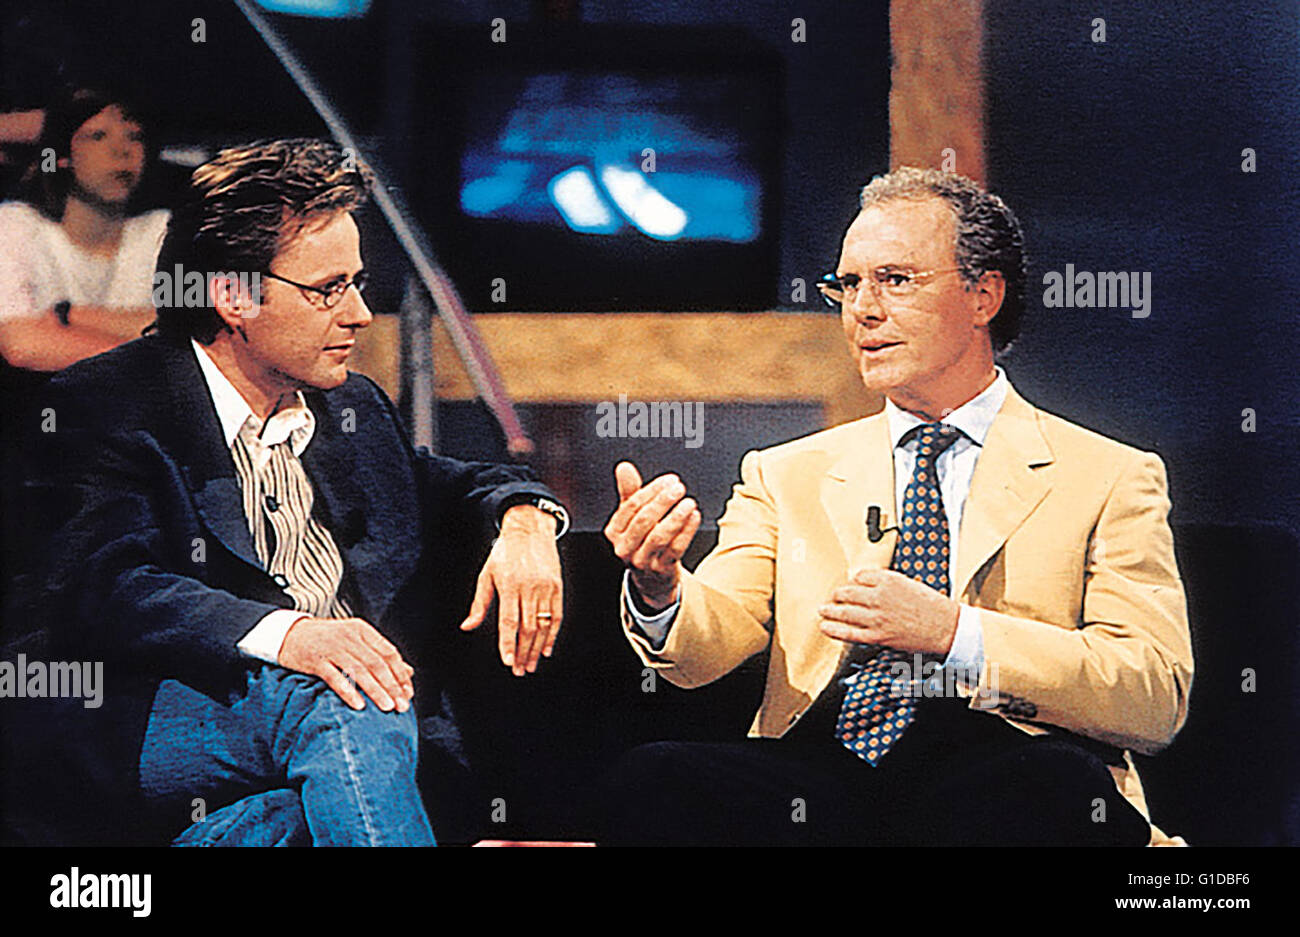 Ran (TV-Show) / Reinhold Beckmann (Moderator) / Franz Beckenbauer (Studiogast)| Stock Photo